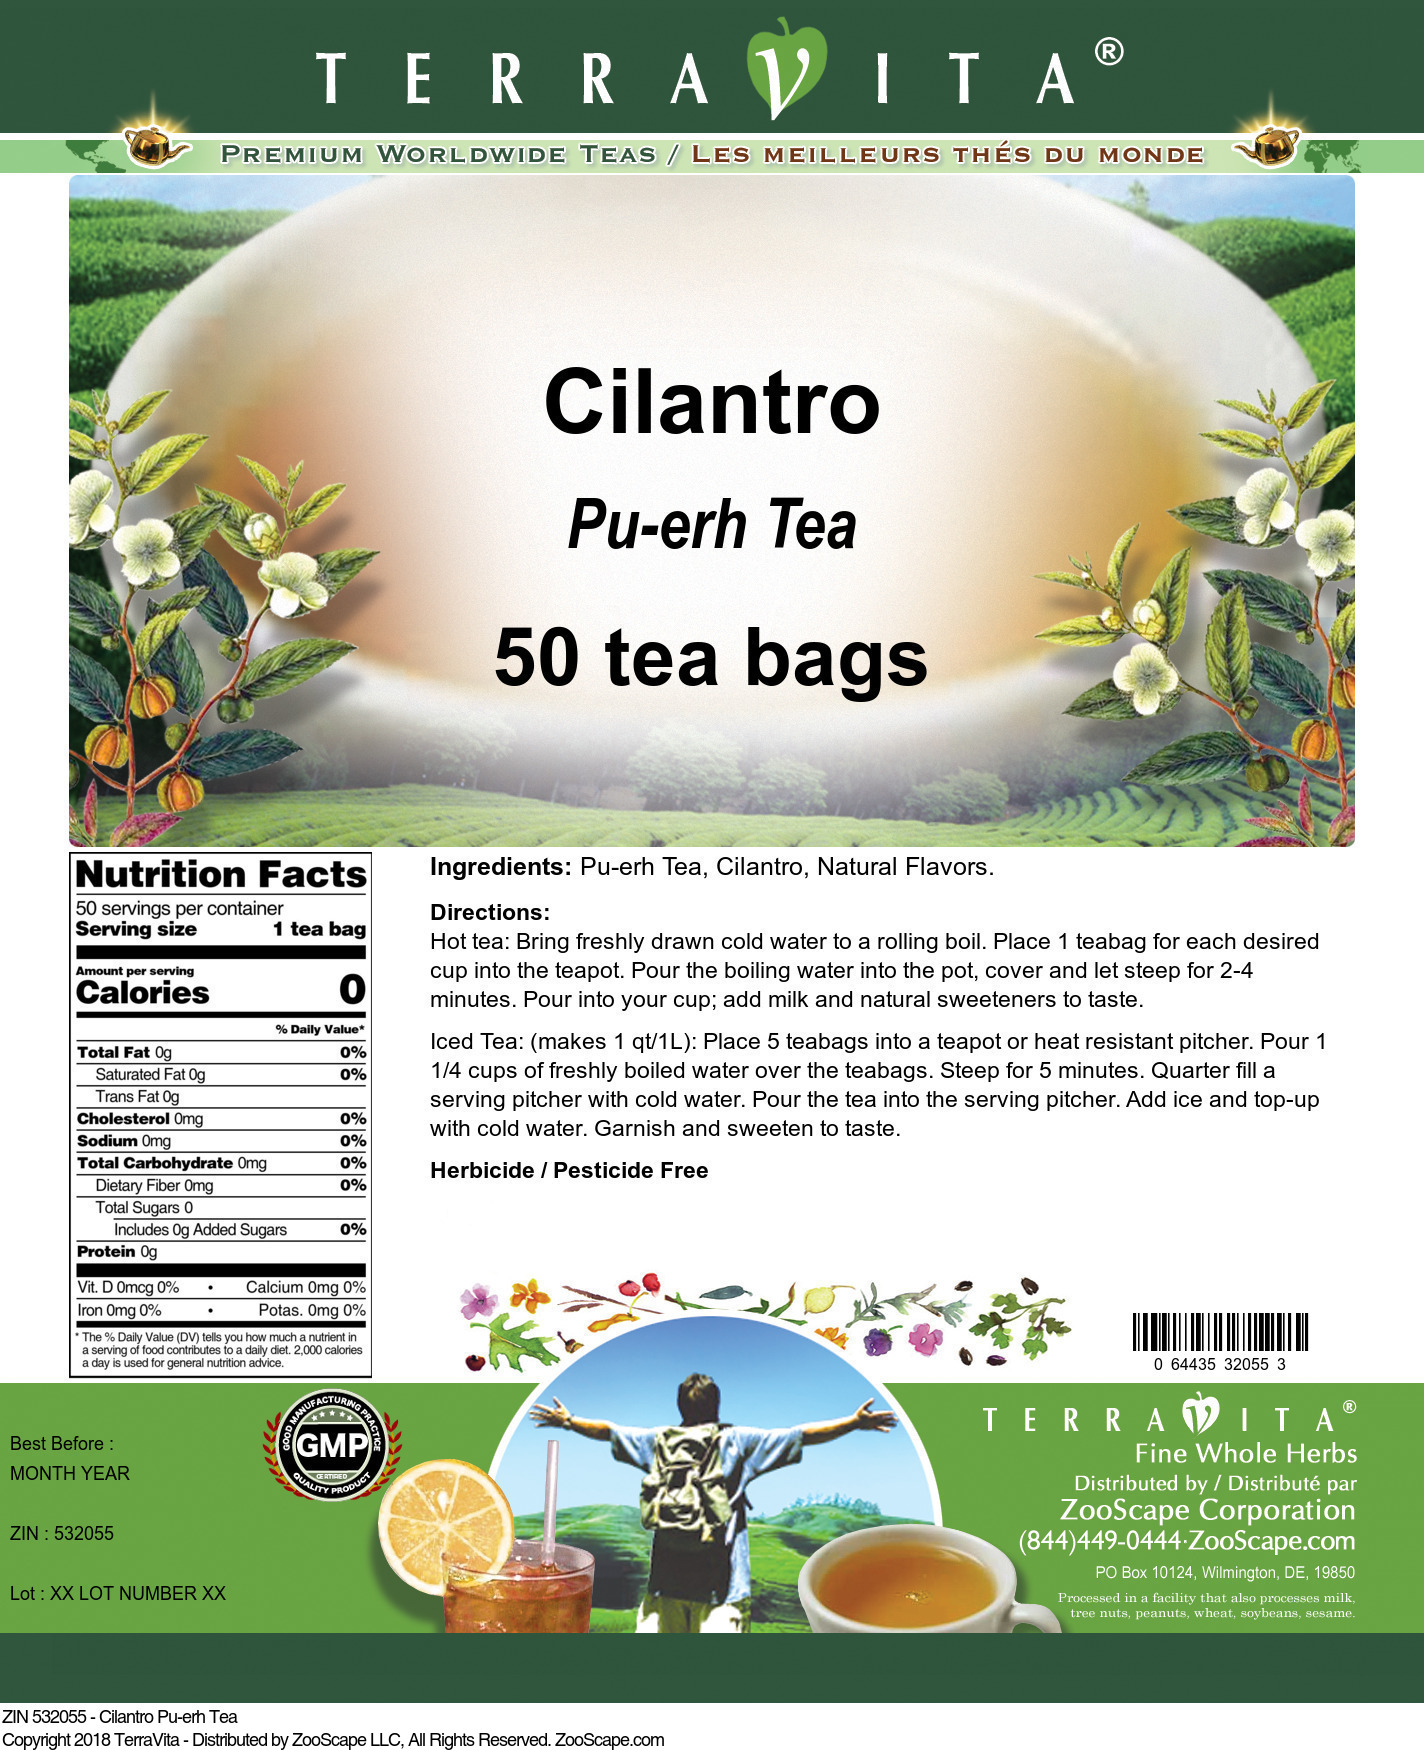 Cilantro Pu-erh Tea - Label